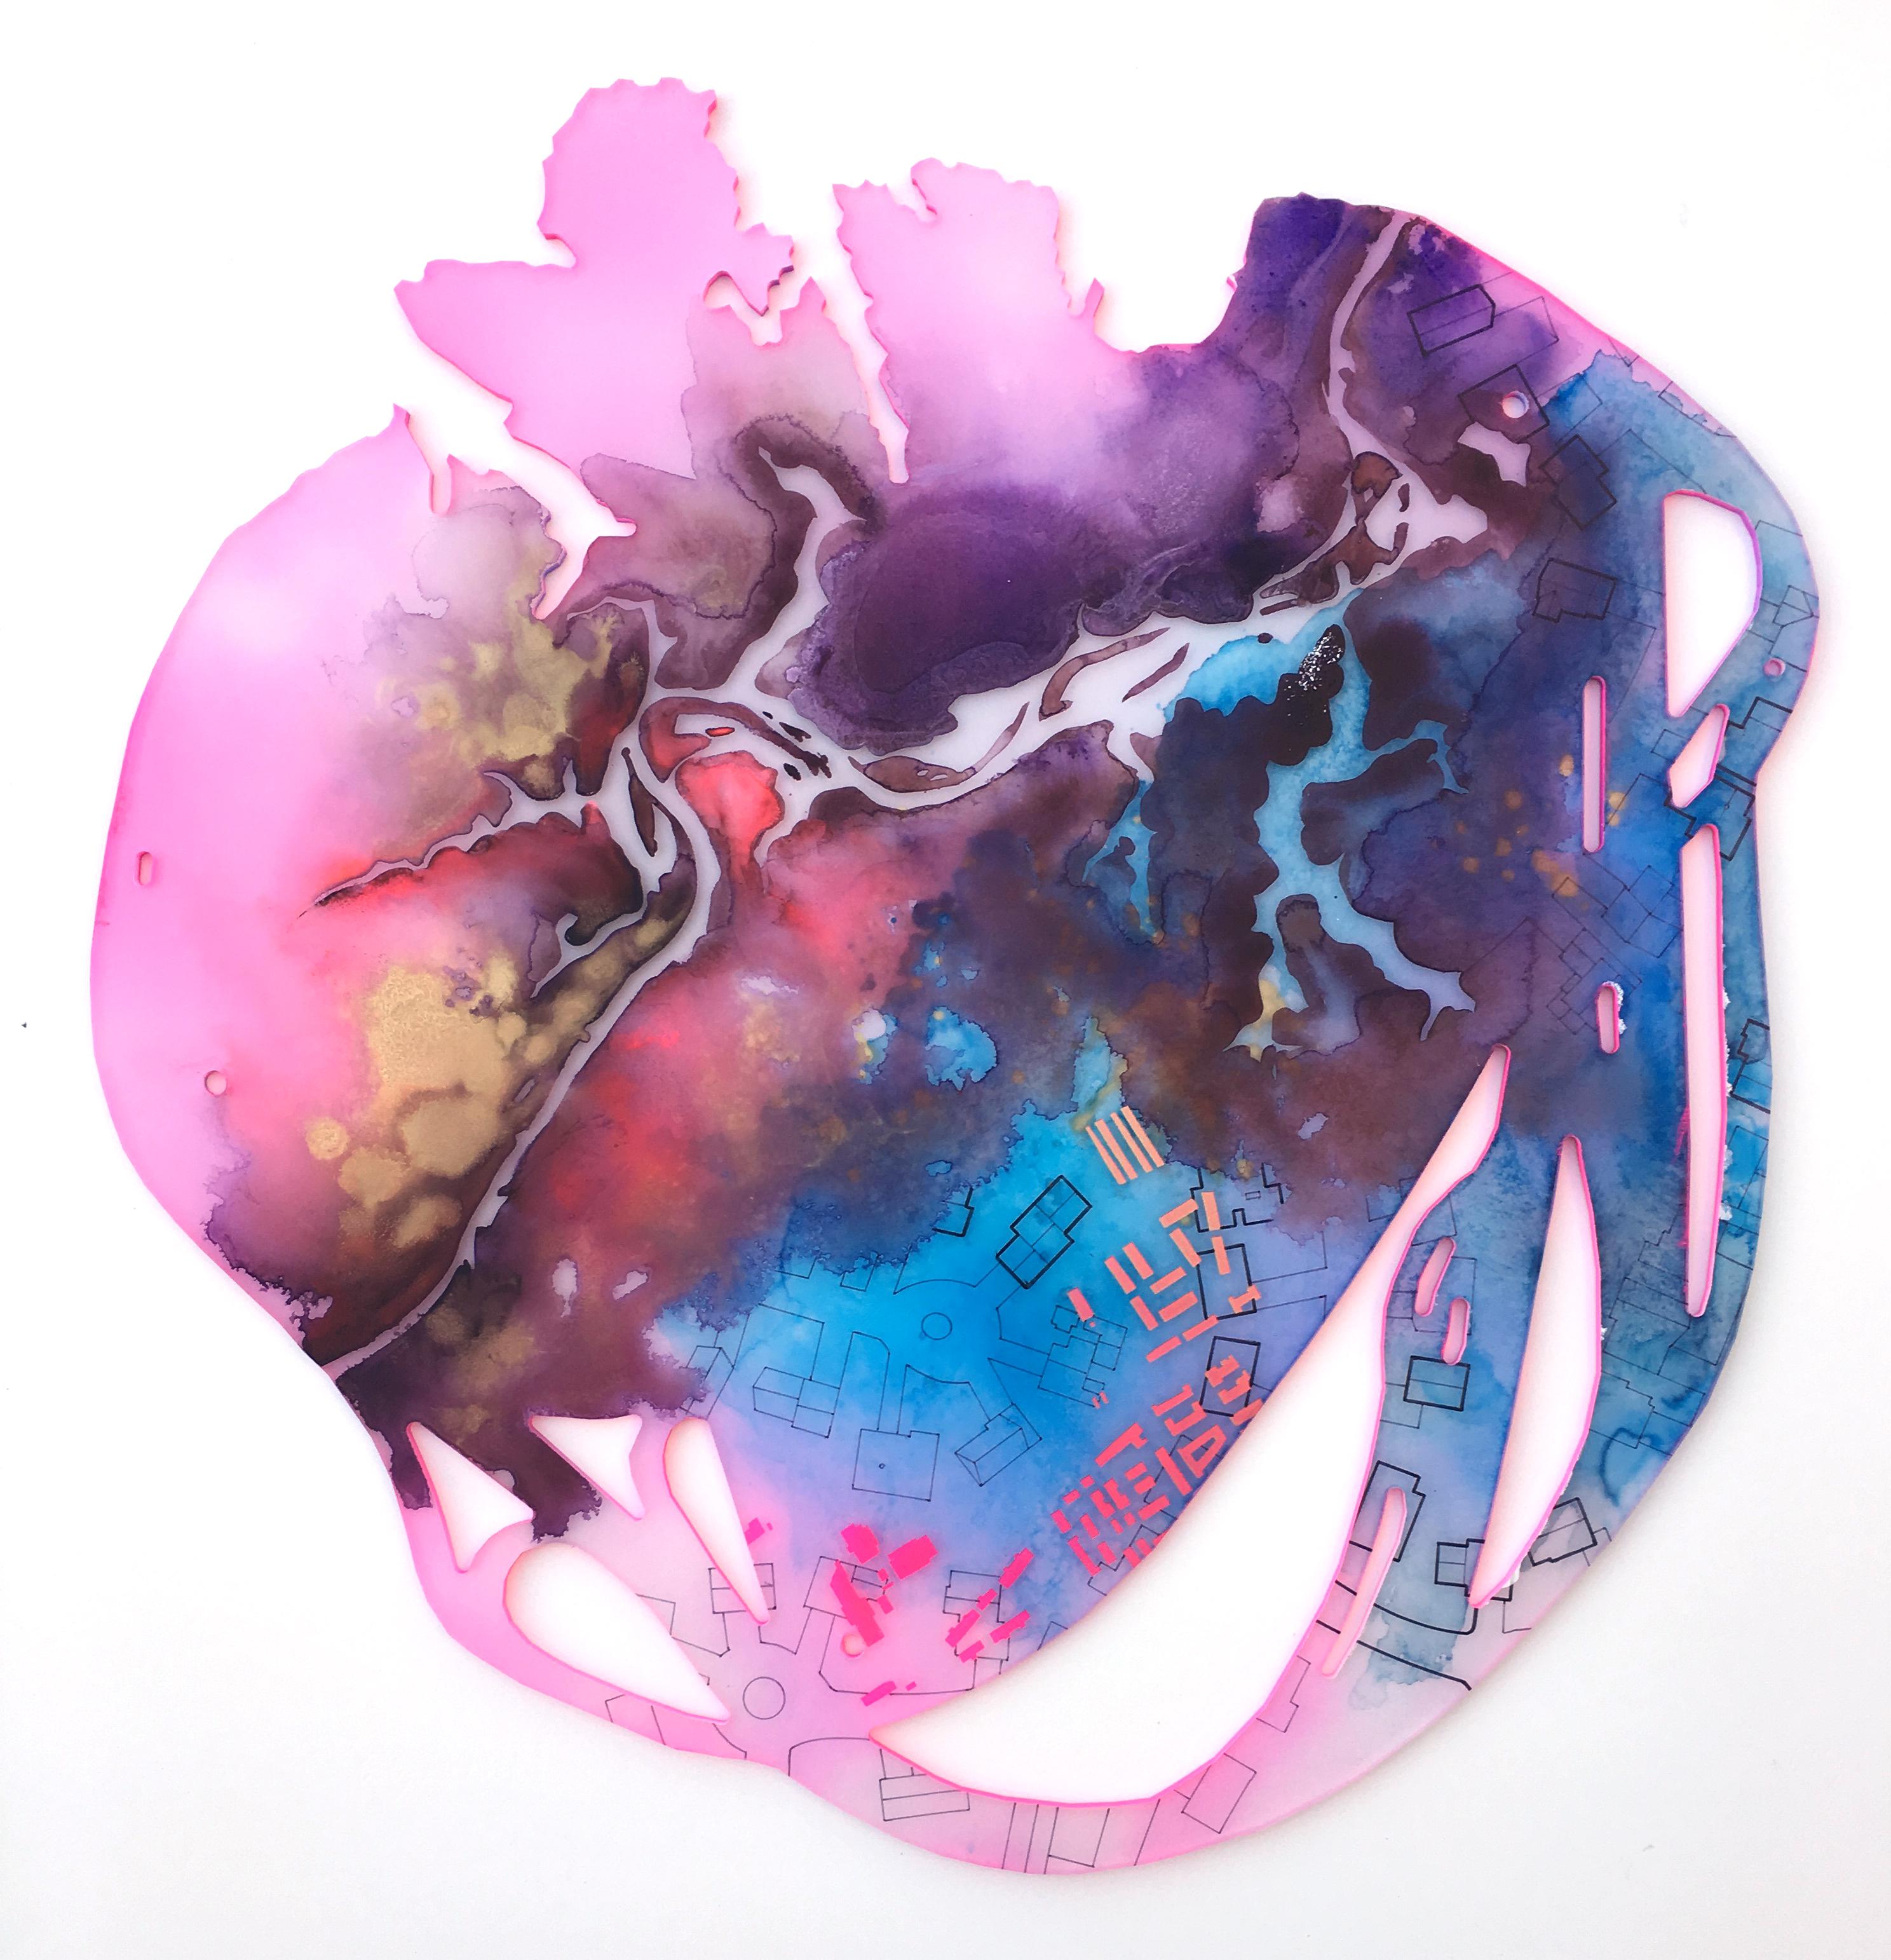 Lindsey Dunnagan Abstract Painting - "Candy Land" Mixed media painting